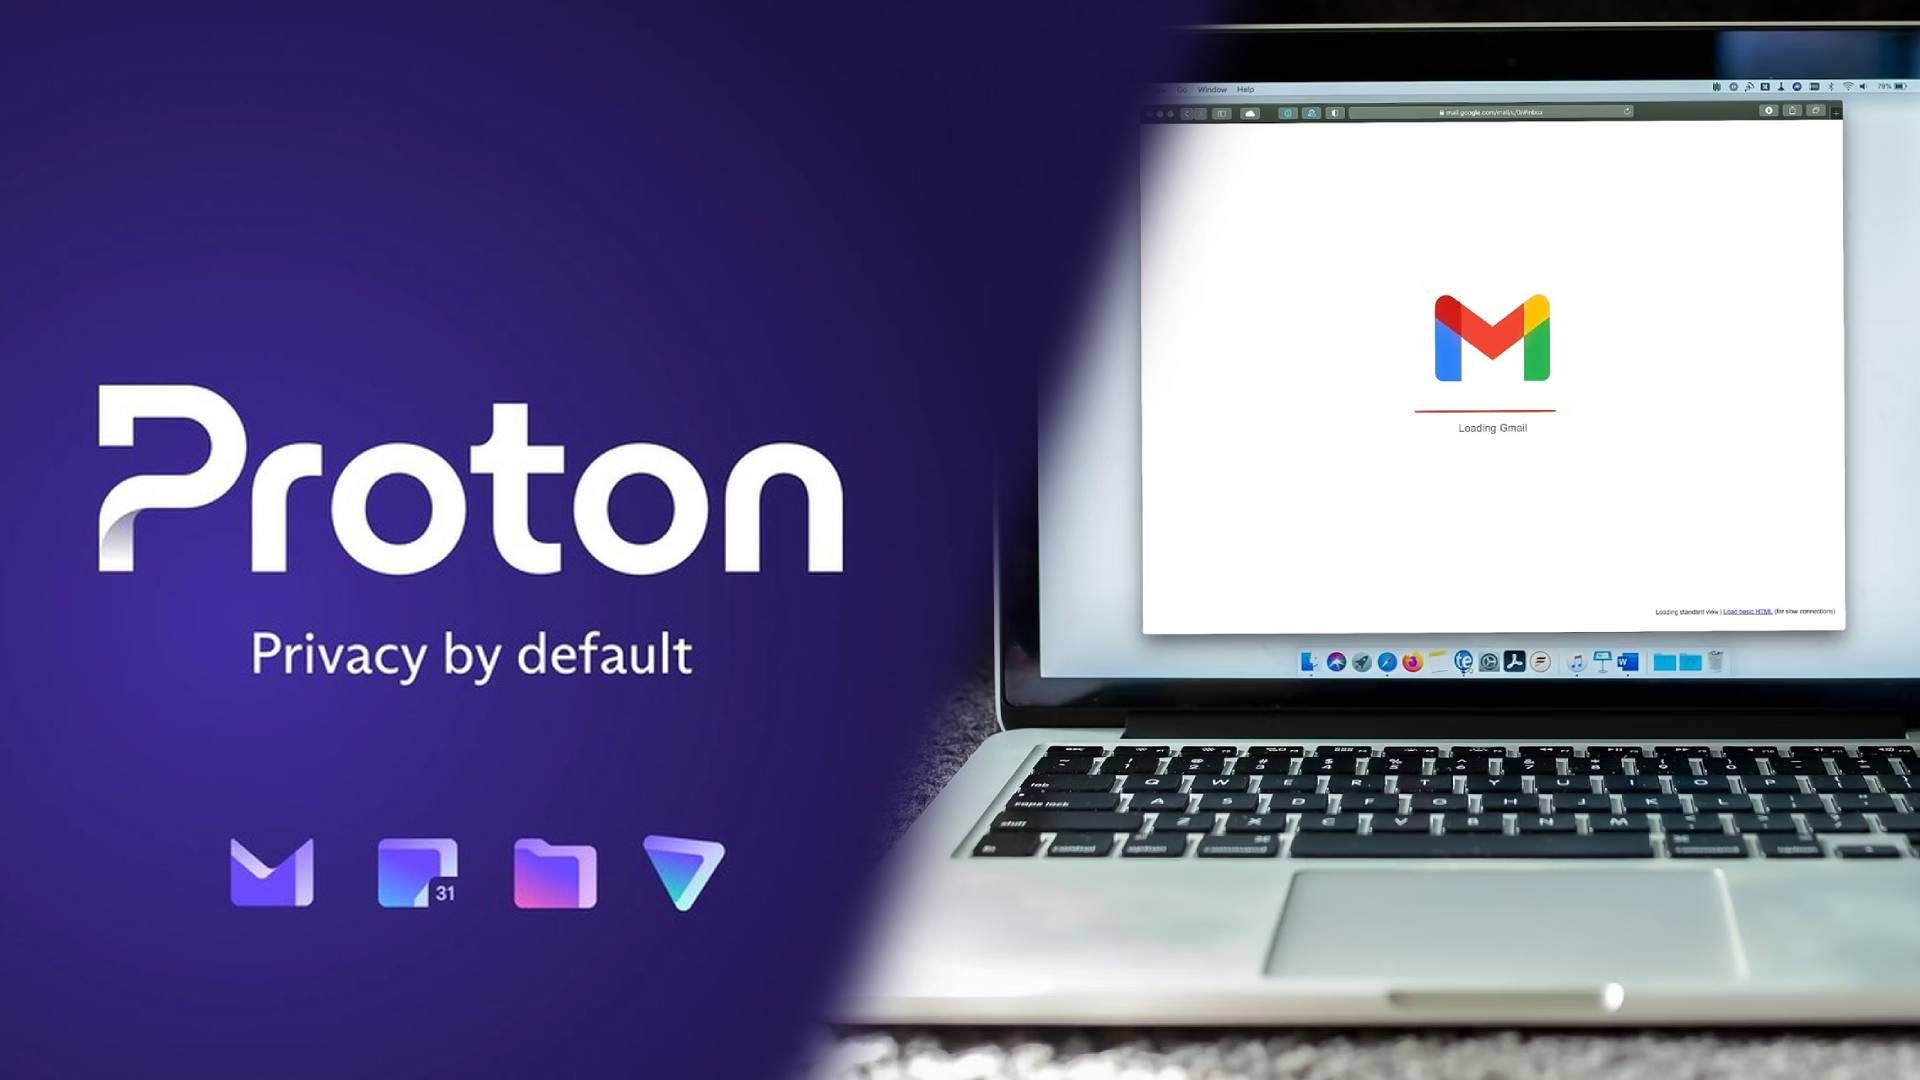 Os logotipos do Proton parcialmente sobrepostos em uma imagem da página de carregamento do Gmail